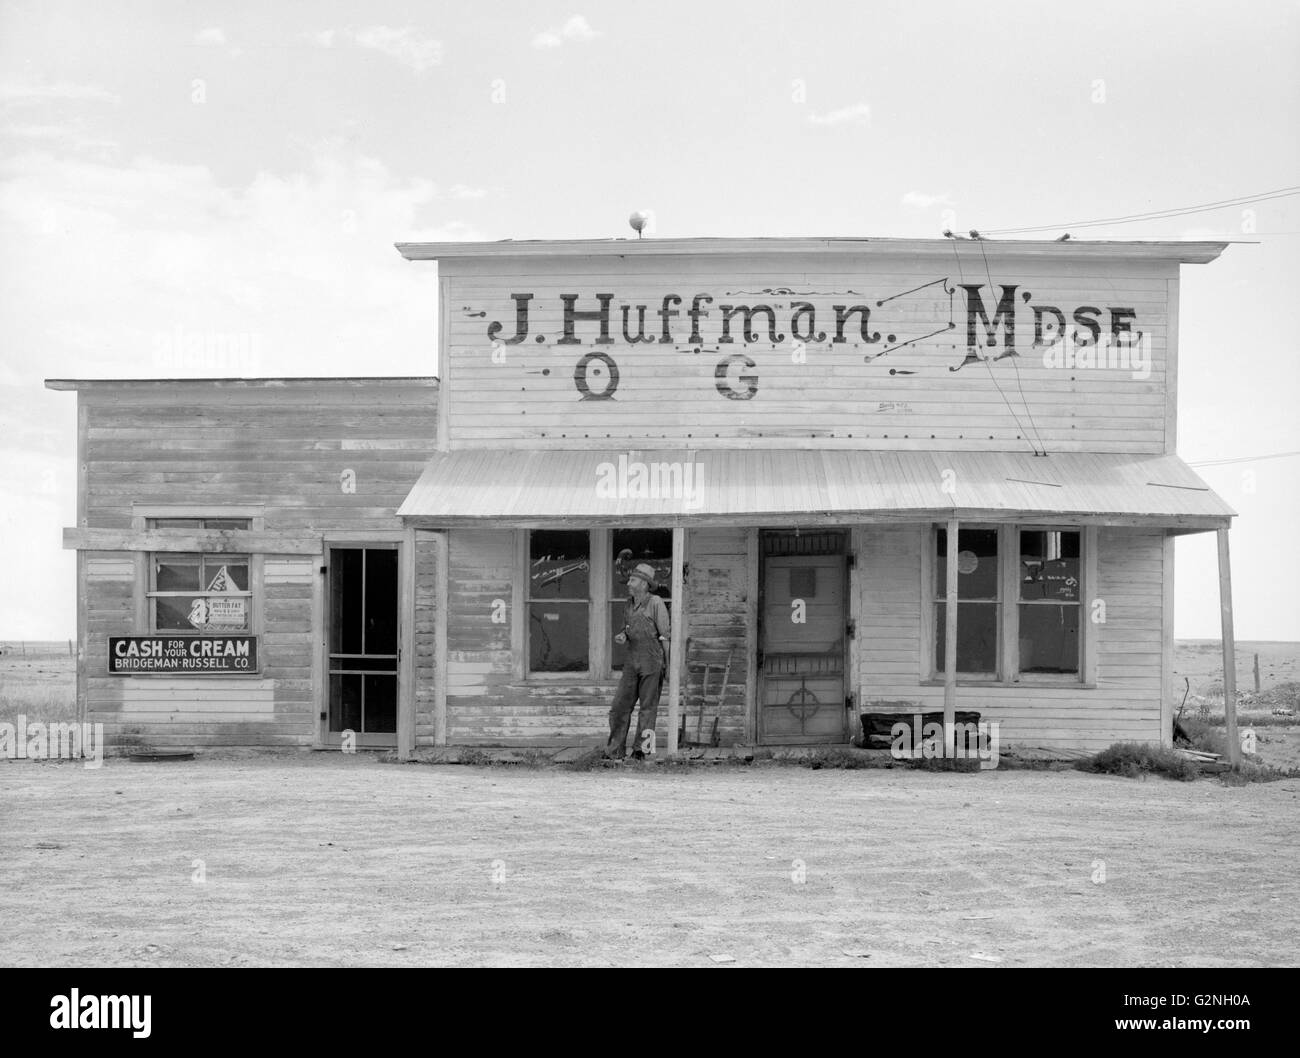 J. Huffman è costretto a chiudere la General Store a causa della siccità,Grassy Butte,North Dakota,STATI UNITI D'AMERICA,Arthur Rothstein per la Farm Security Administration (FSA),Luglio 1936 Foto Stock